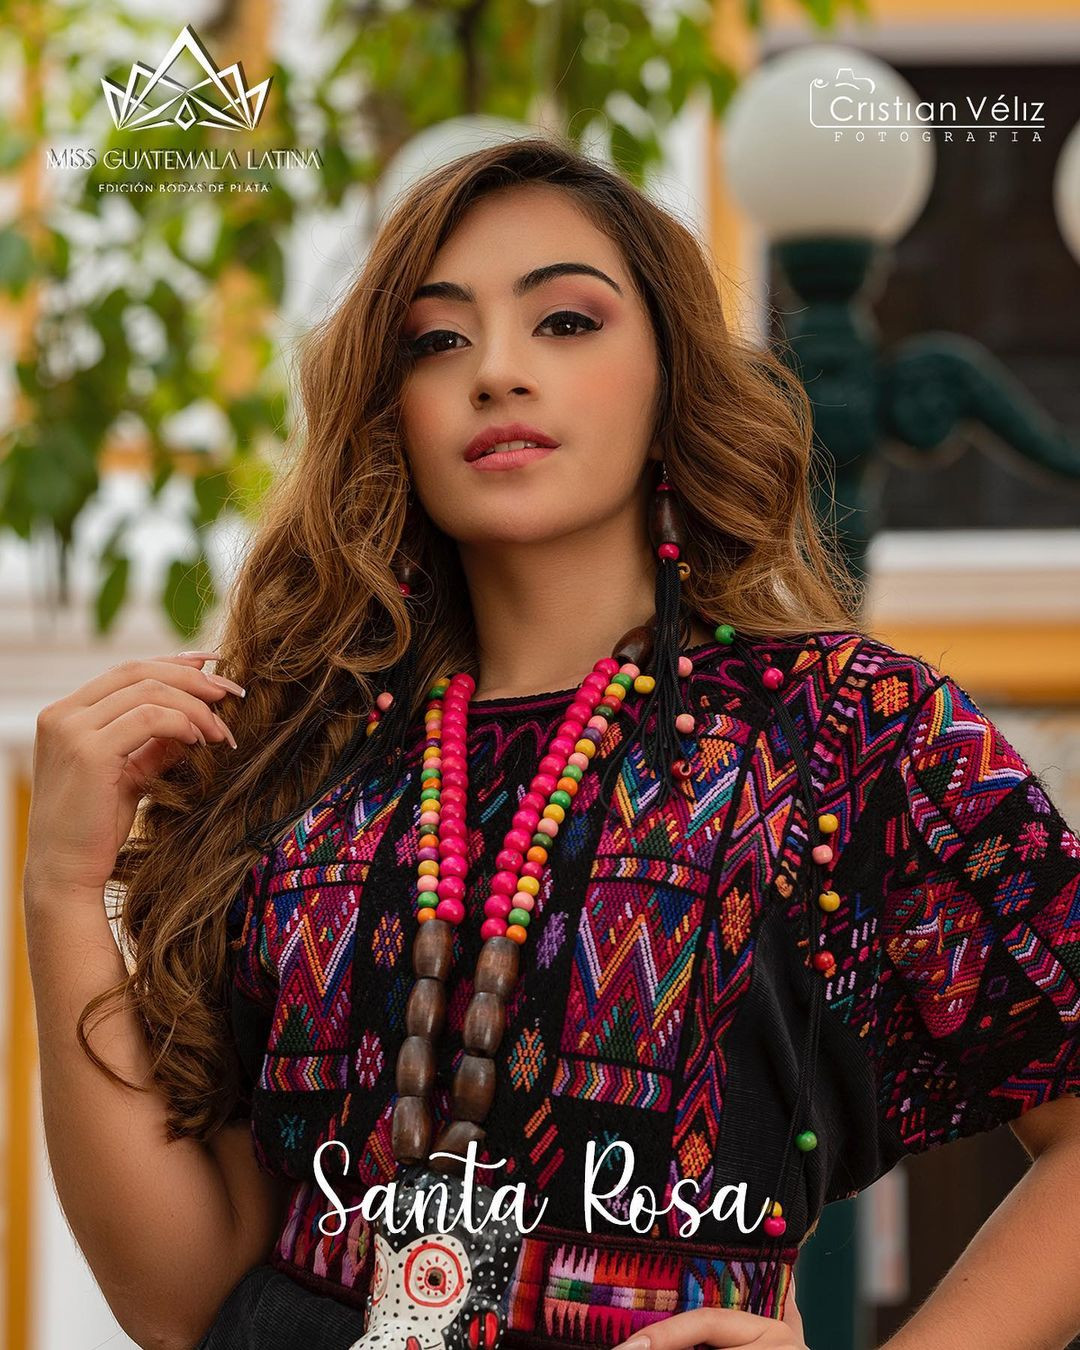 Latina - candidatas a miss guatemala latina 2021. final: 30 de abril. - Página 3 B2rdQe